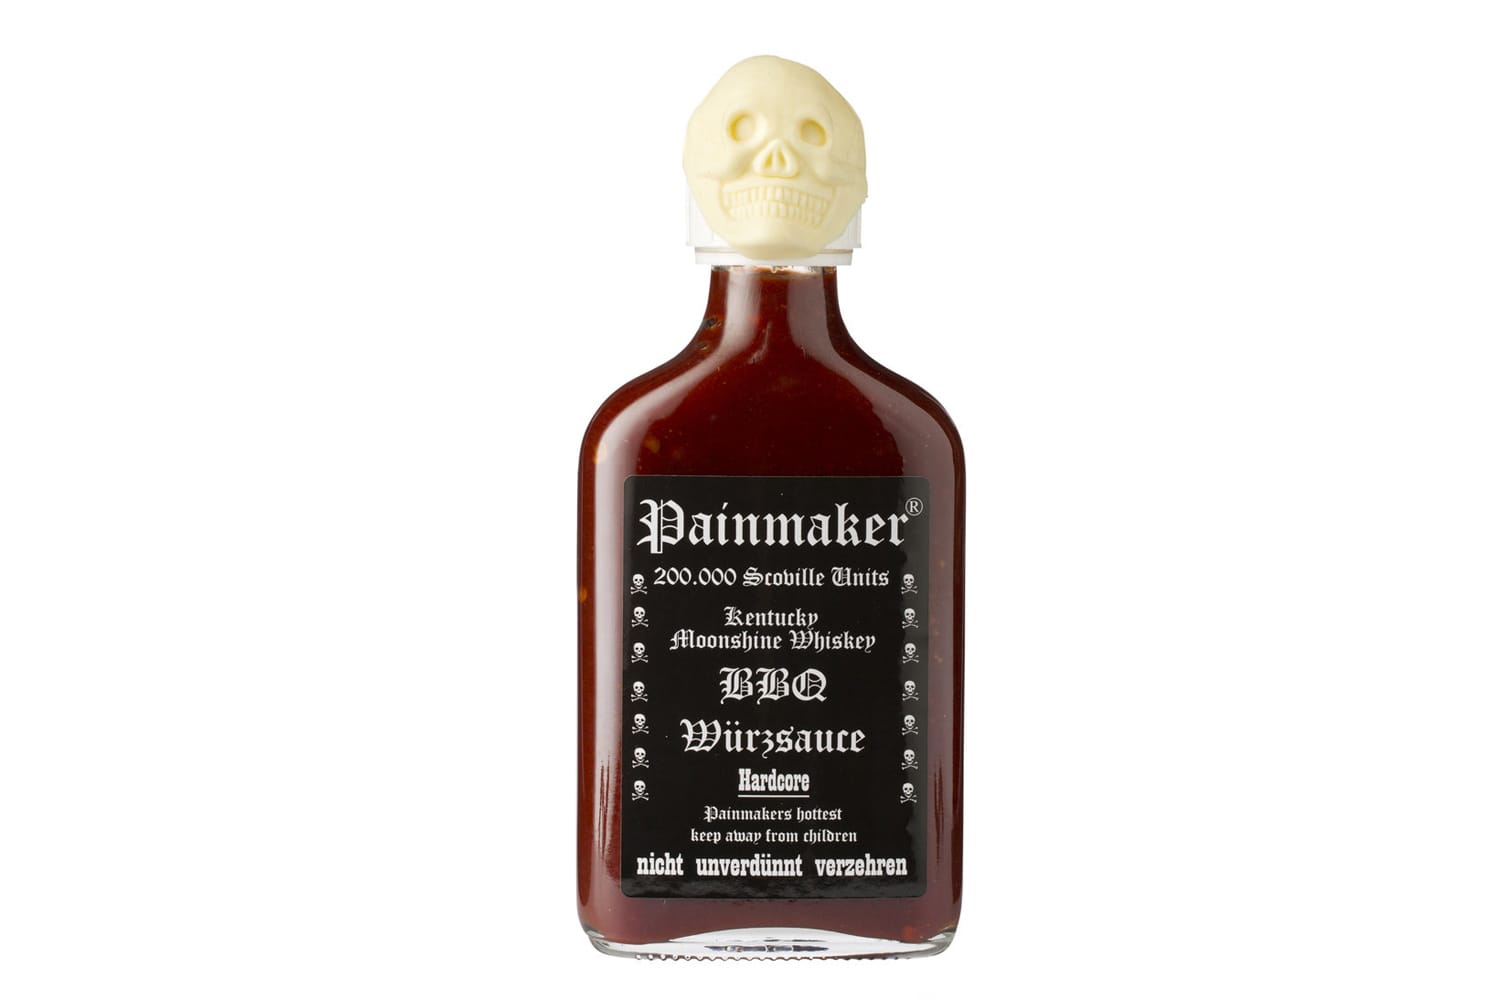 Nicht ohne Grund kommt 200.000 Scoville starke Hardcore BBQ Sauce von Painmaker (100ml um 12 Euro) mit kindersicherem Verschluss und dem Hinweis "nicht unverdünnt verzehren".